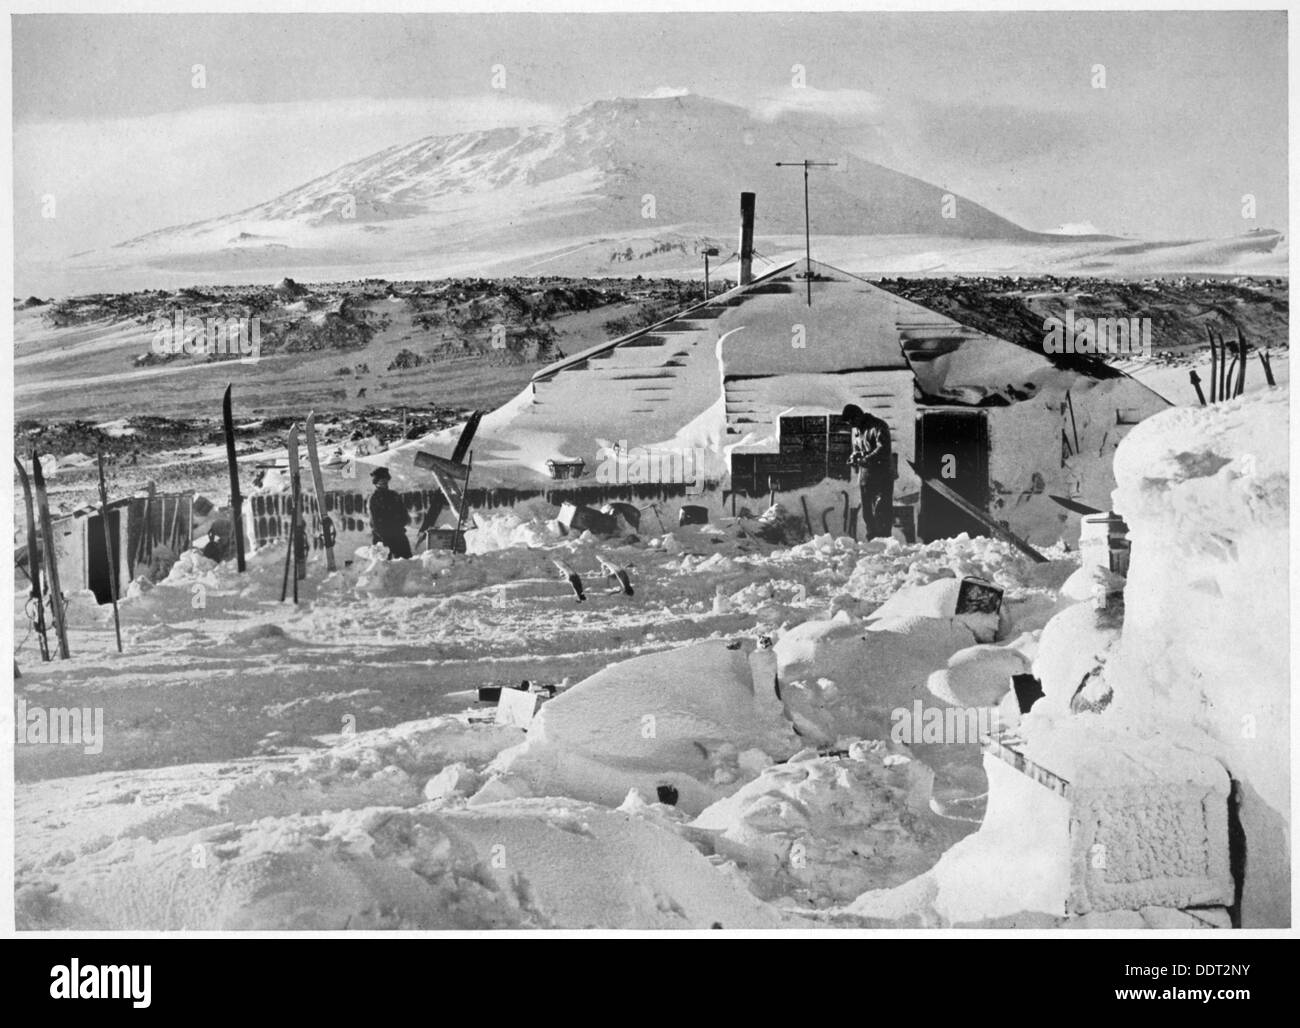 "In trimestri invernali lavorando su mappe e documenti ", Antartide, 1911-1912. Artista: Herbert Ponting Foto Stock